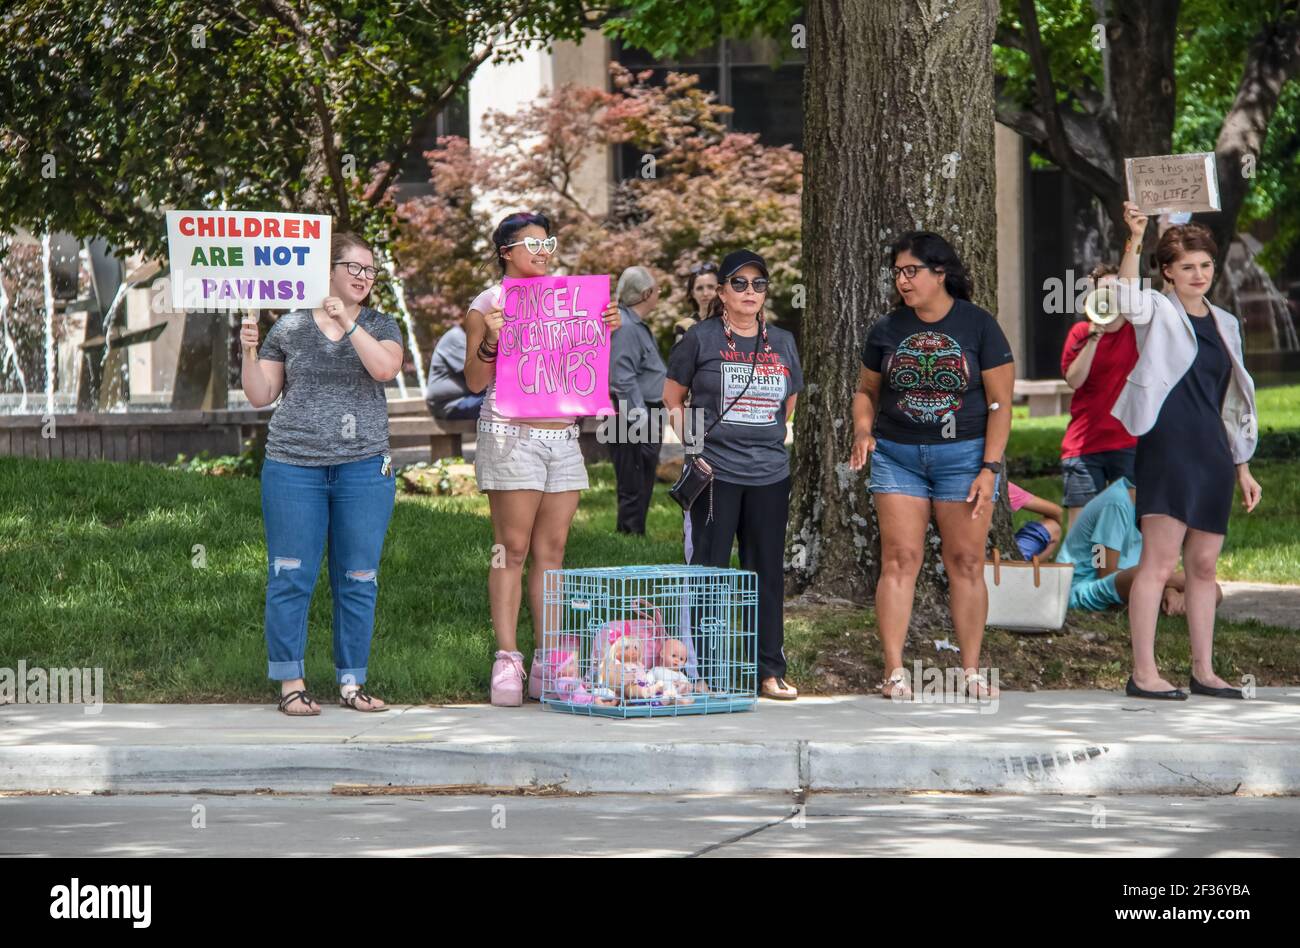 7-2-2019 Tulsa USA - Protestierende im Park mit Schildern und Puppen In einem Käfig-Kinder sind keine Bauern - ist das was Es bedeutet Pro-Life zu sein - Konzentration ca. Stockfoto